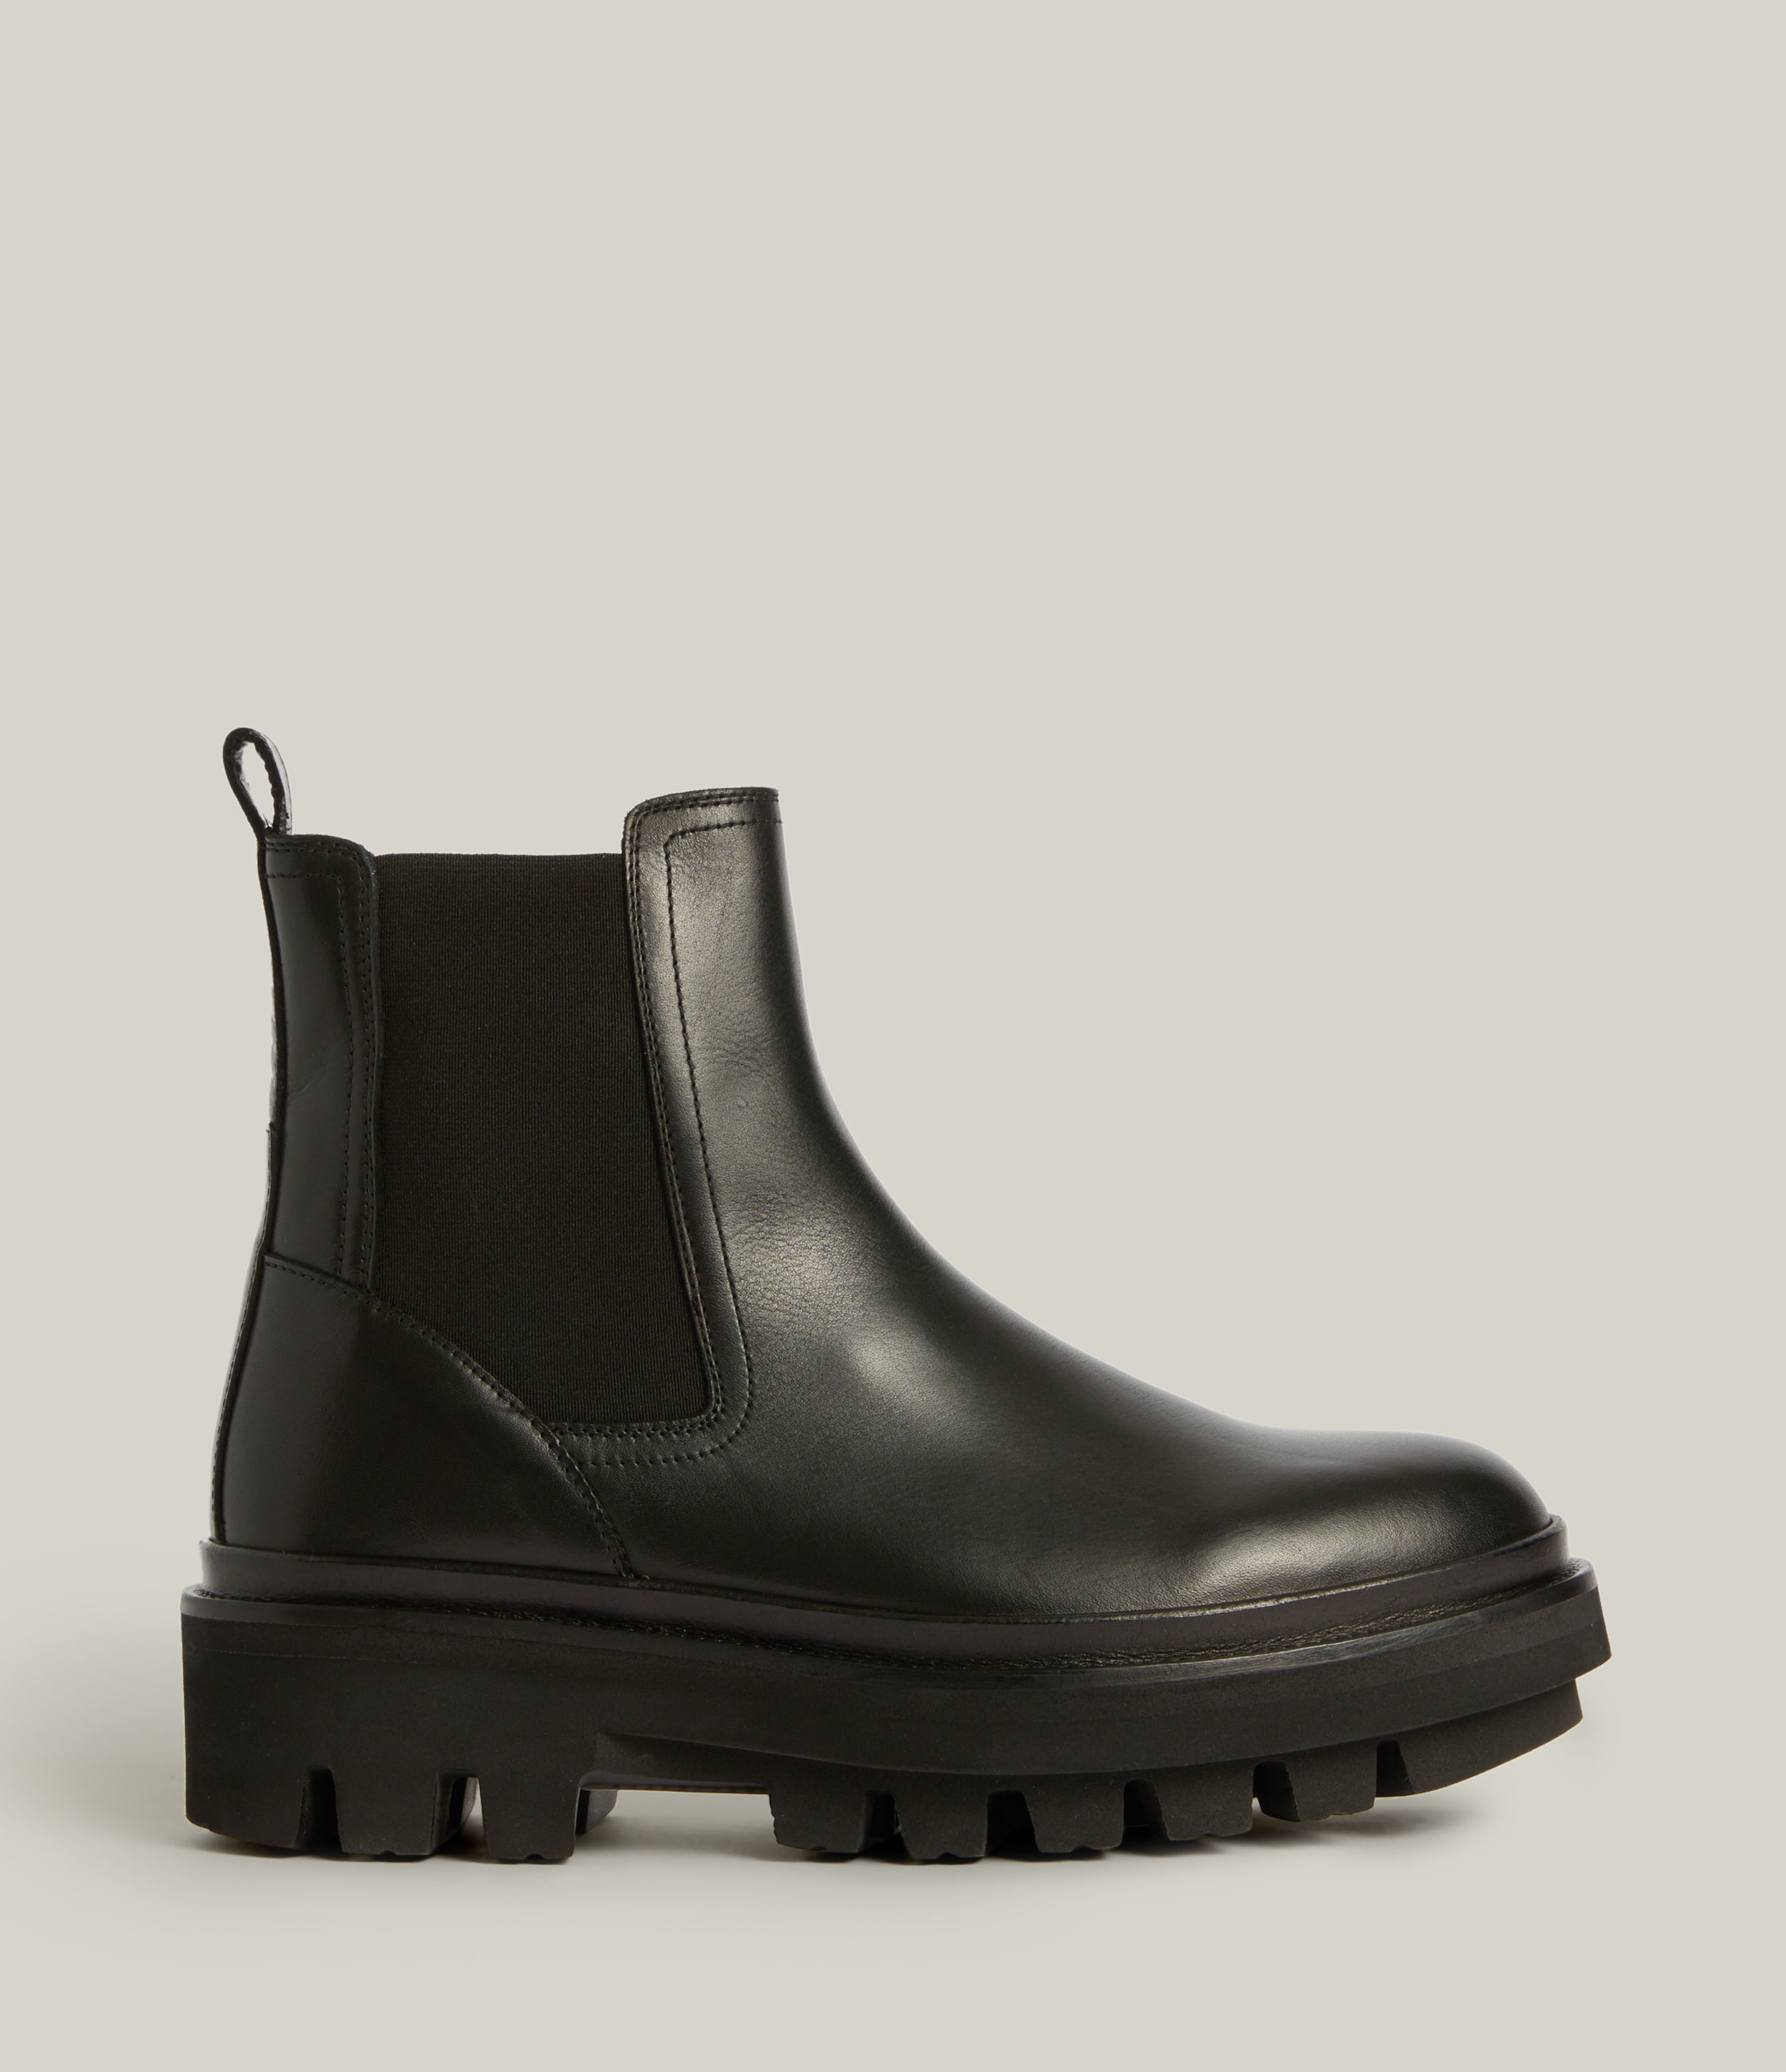 AllSaints Women's Bea Leather Boots, Black, Size: UK 8/US 10/EU 41